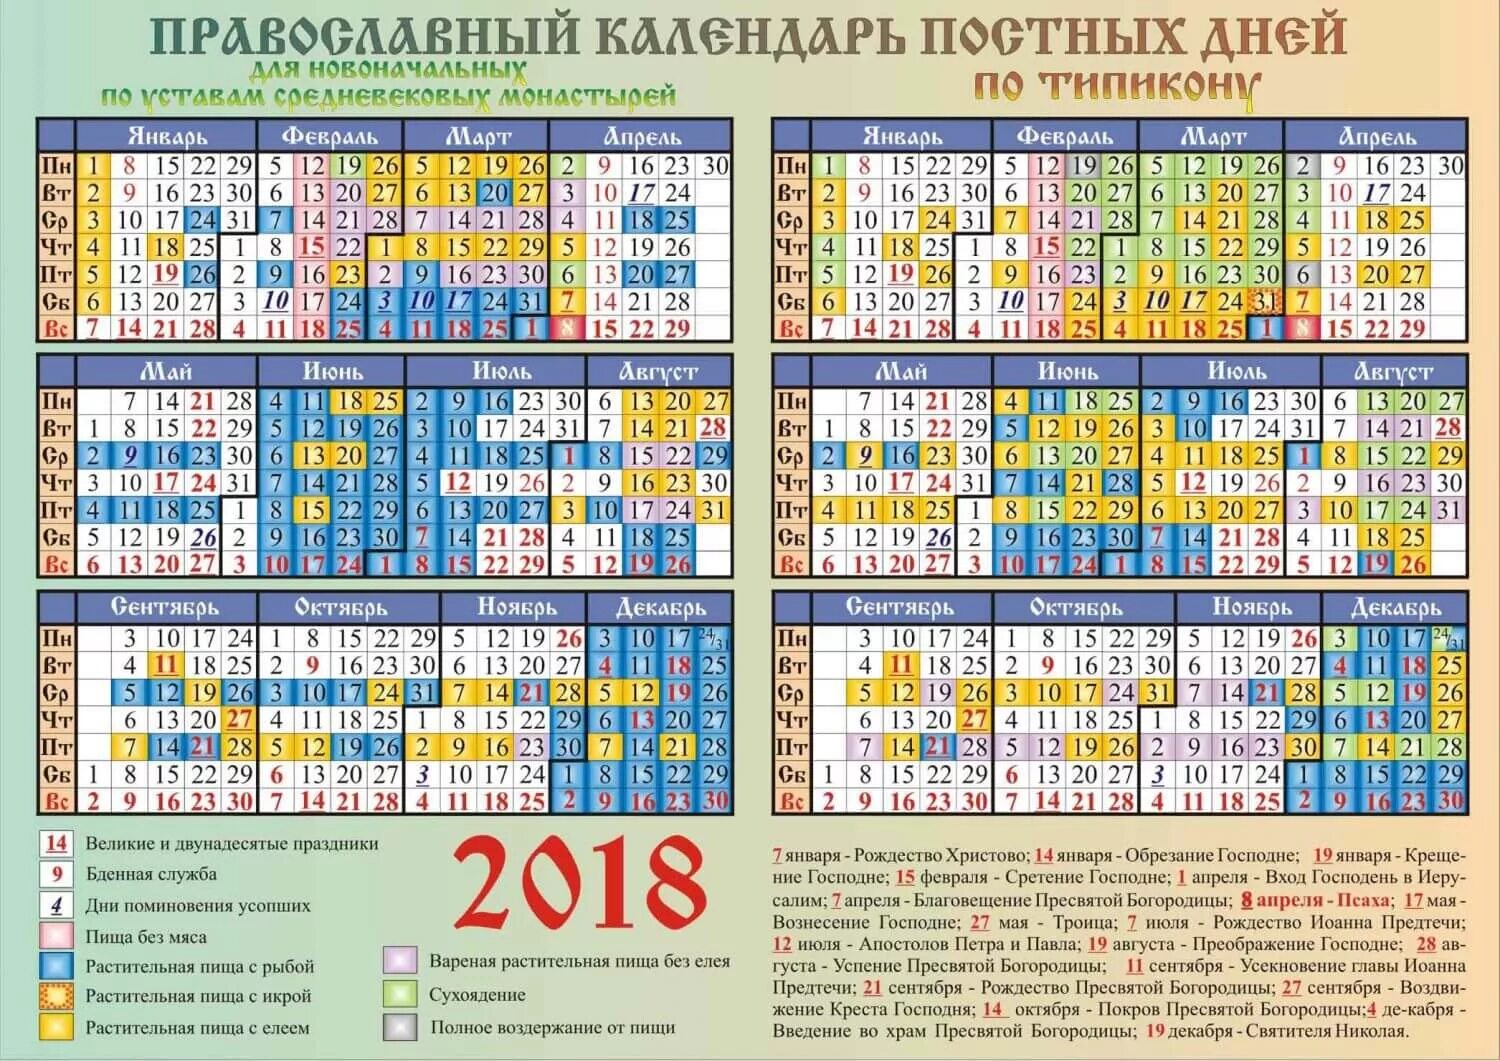 Постные дни в марте 2024 года. Календарь православных праздников 2018. Церковные праздники в 2018 году. Церковные праздники в апреле 2018 года. Постные дни.